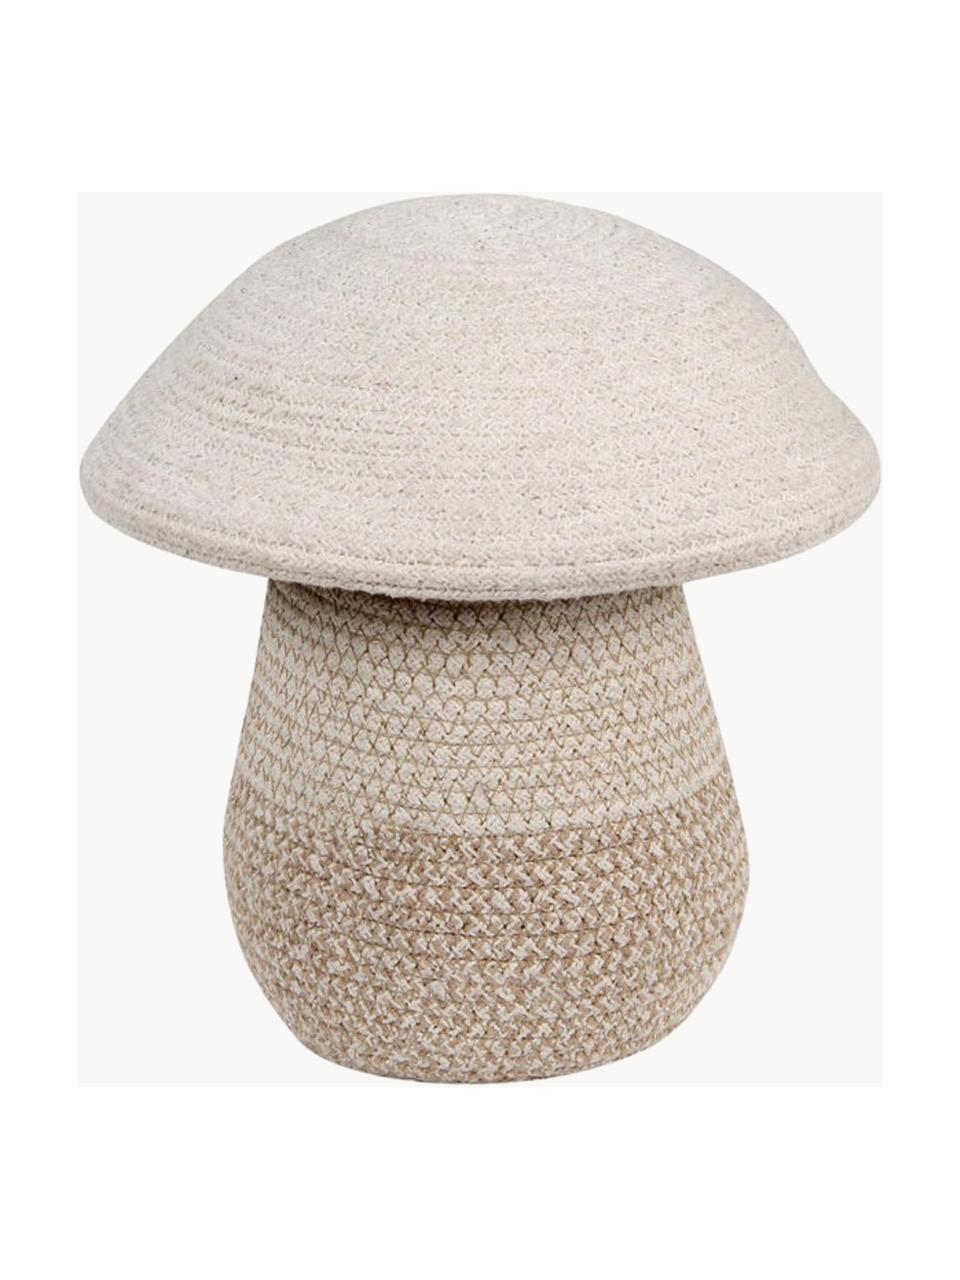 Panier de rangement artisanal pour enfants Mushroom, haut. 27 cm, 97 % coton, 3 % fibres synthétiques, Blanc crème, tons beiges, Ø 30 x haut. 27 cm